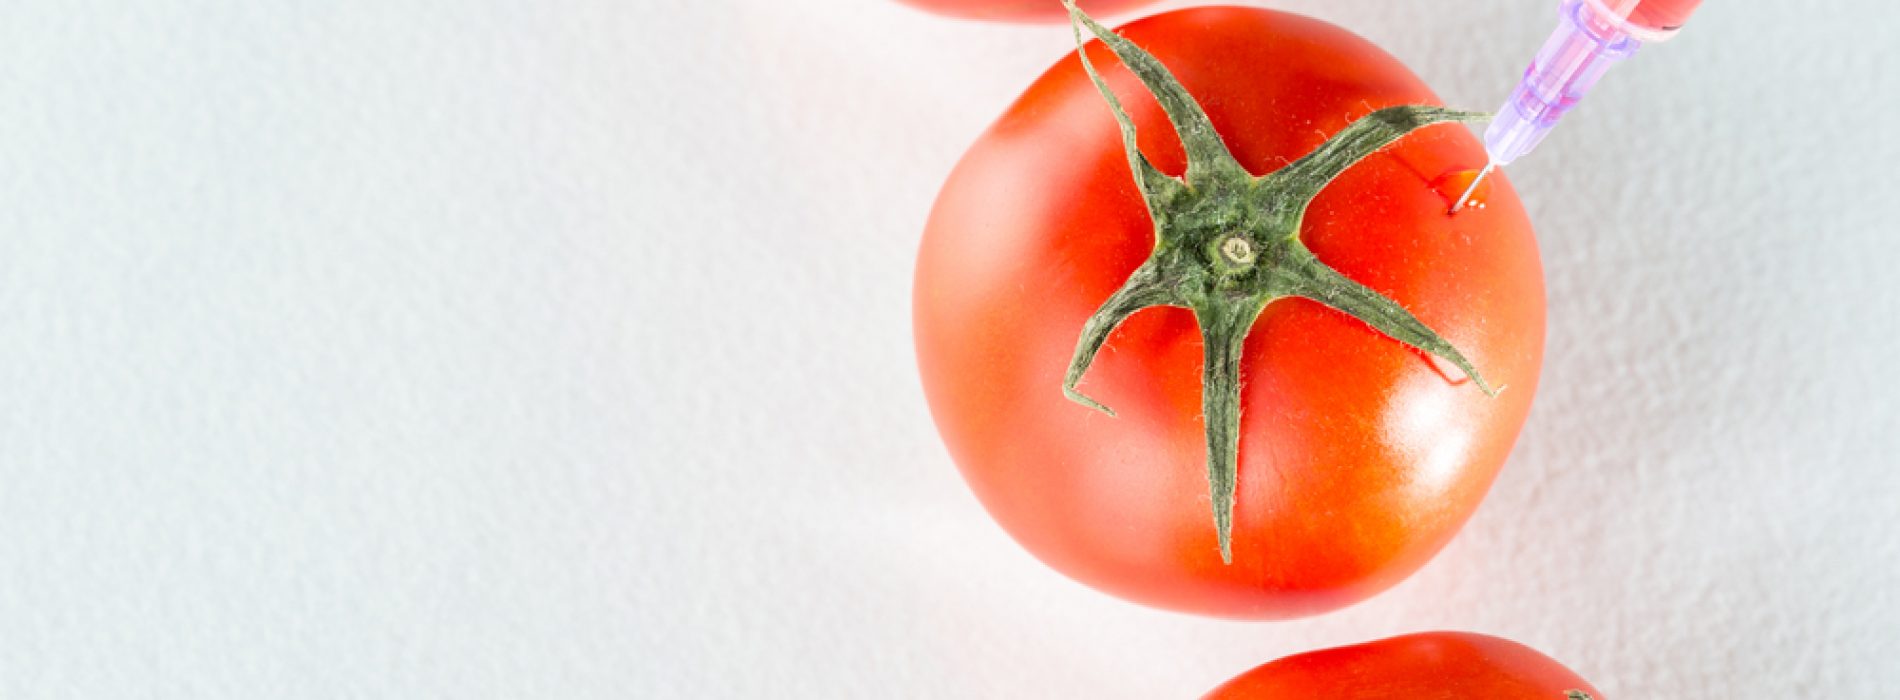 Genetisch bewerkte tomaat gepromoot als therapeutisch, maar is het zelfs veilig?